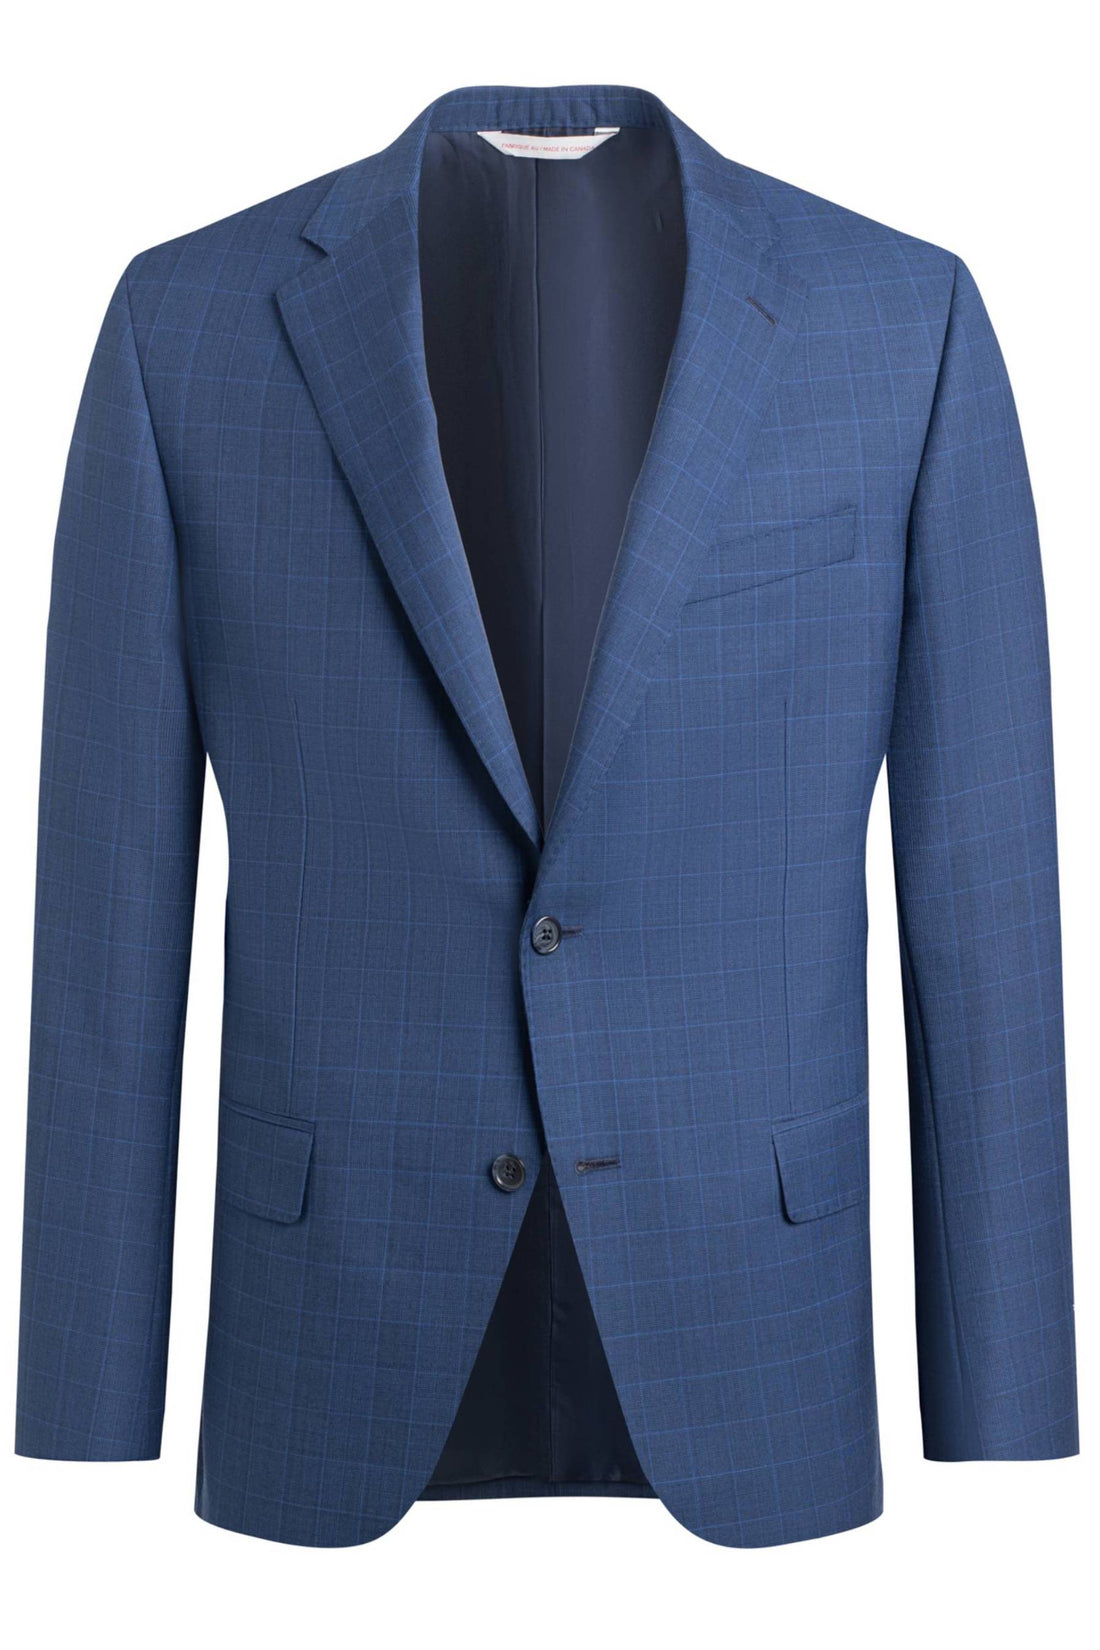 Samuelsohn Blue Glen Plaid Classic Suit Front Jacket